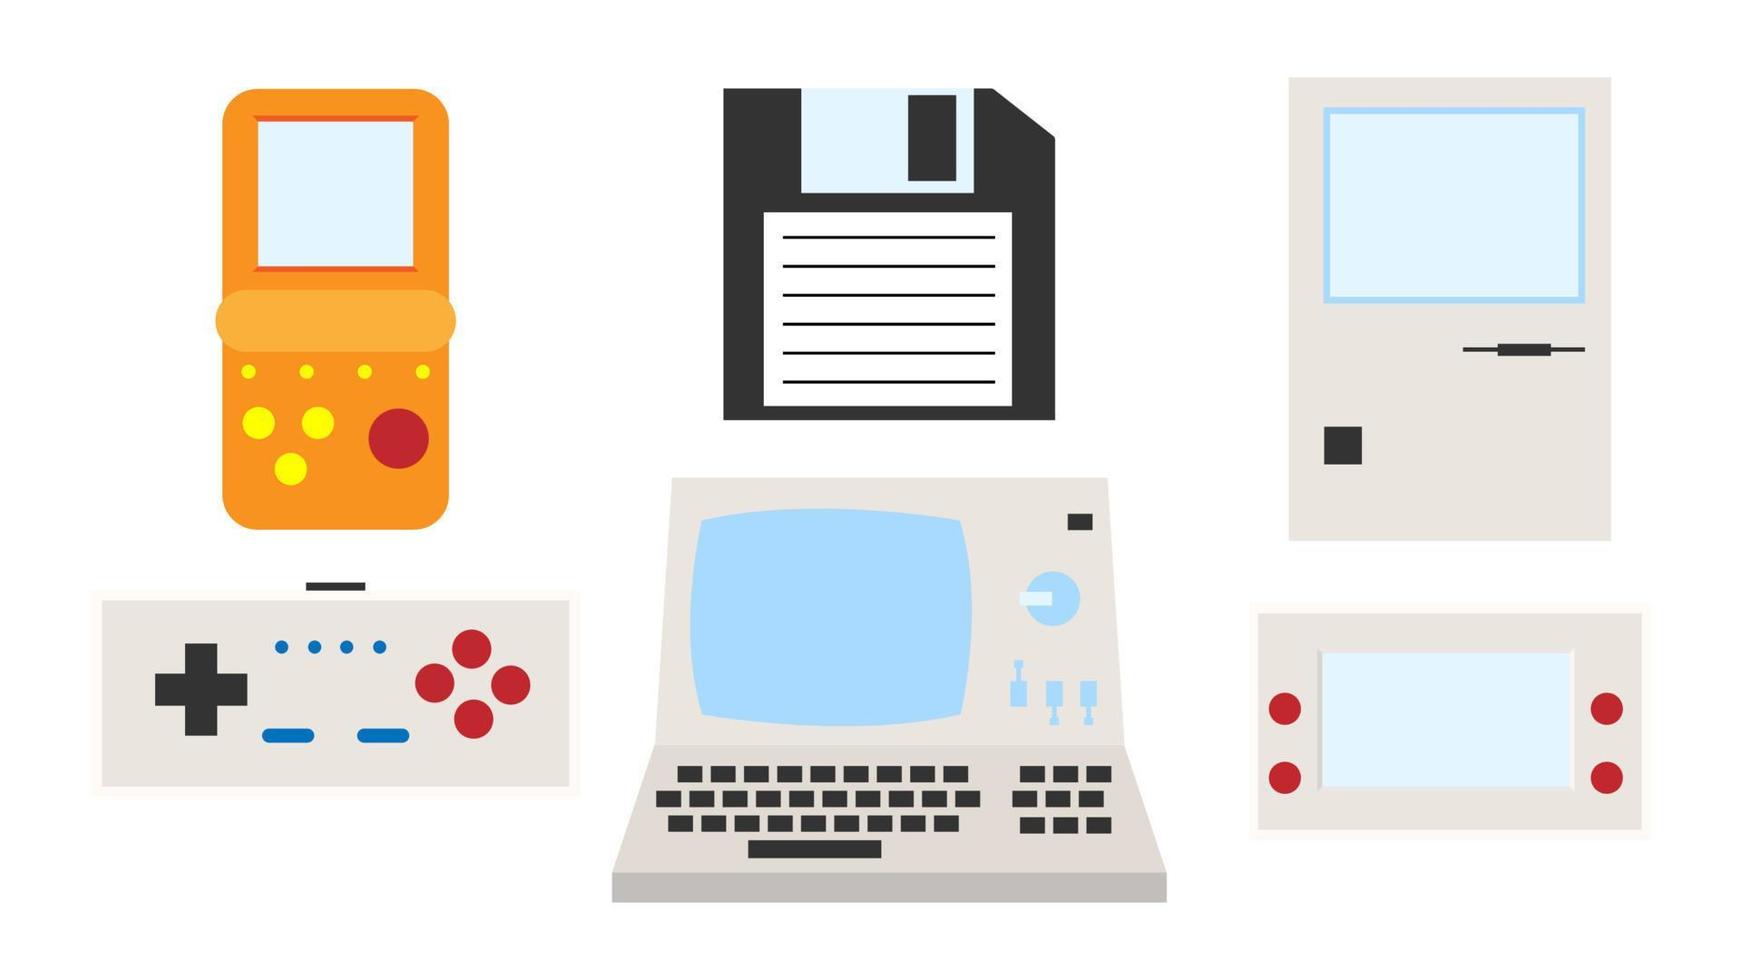 conjunto de viejas computadoras electrónicas de tecnología hipster vintage retro, pc, disquete, consolas de videojuegos portátiles de juegos de los años 70, 80, 90. ilustración vectorial vector